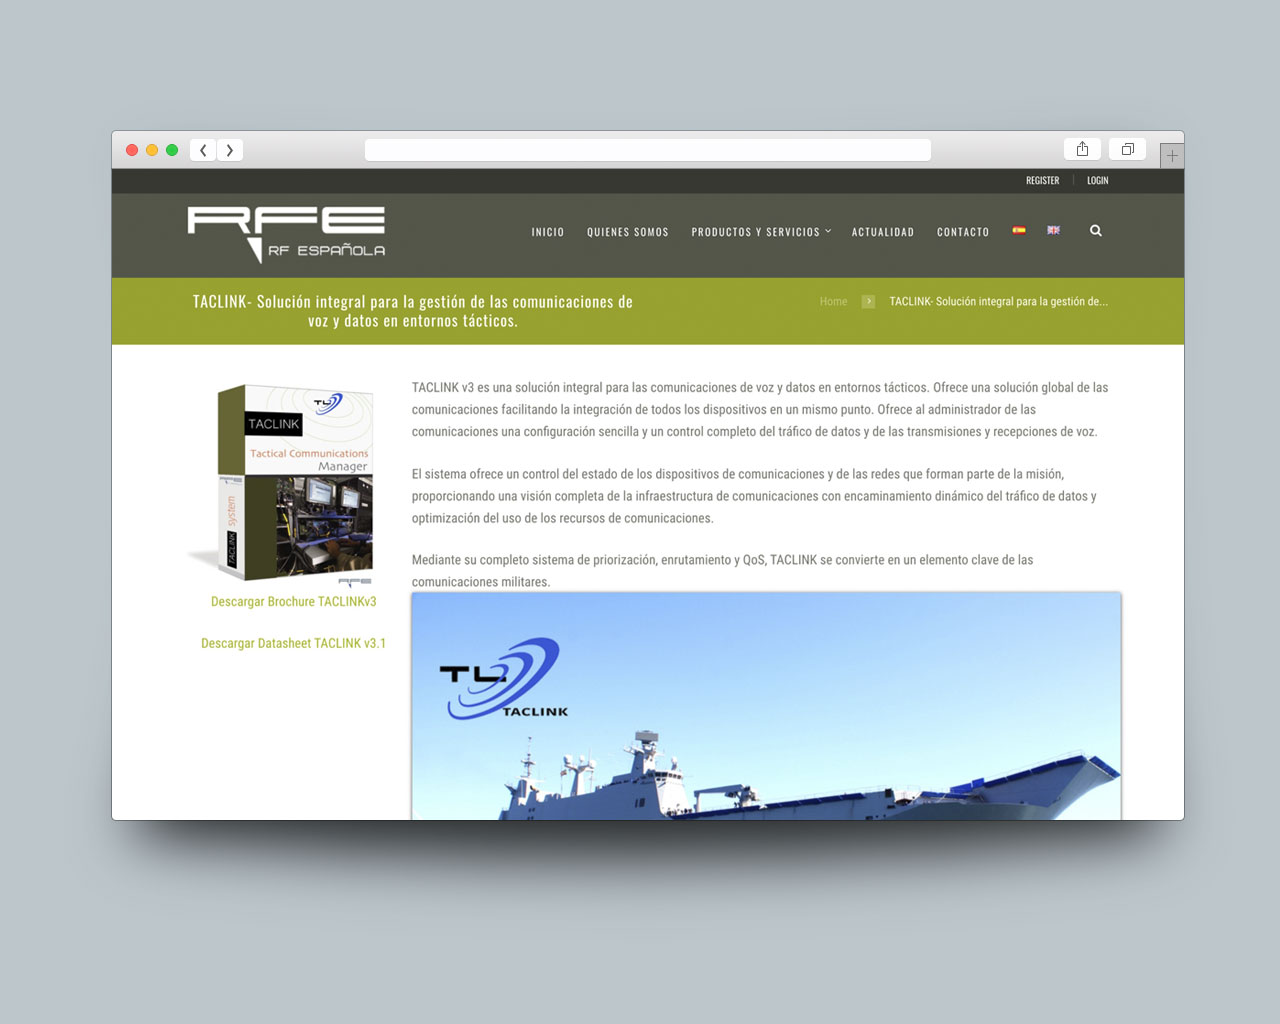 Vista de producto en la web RF Española